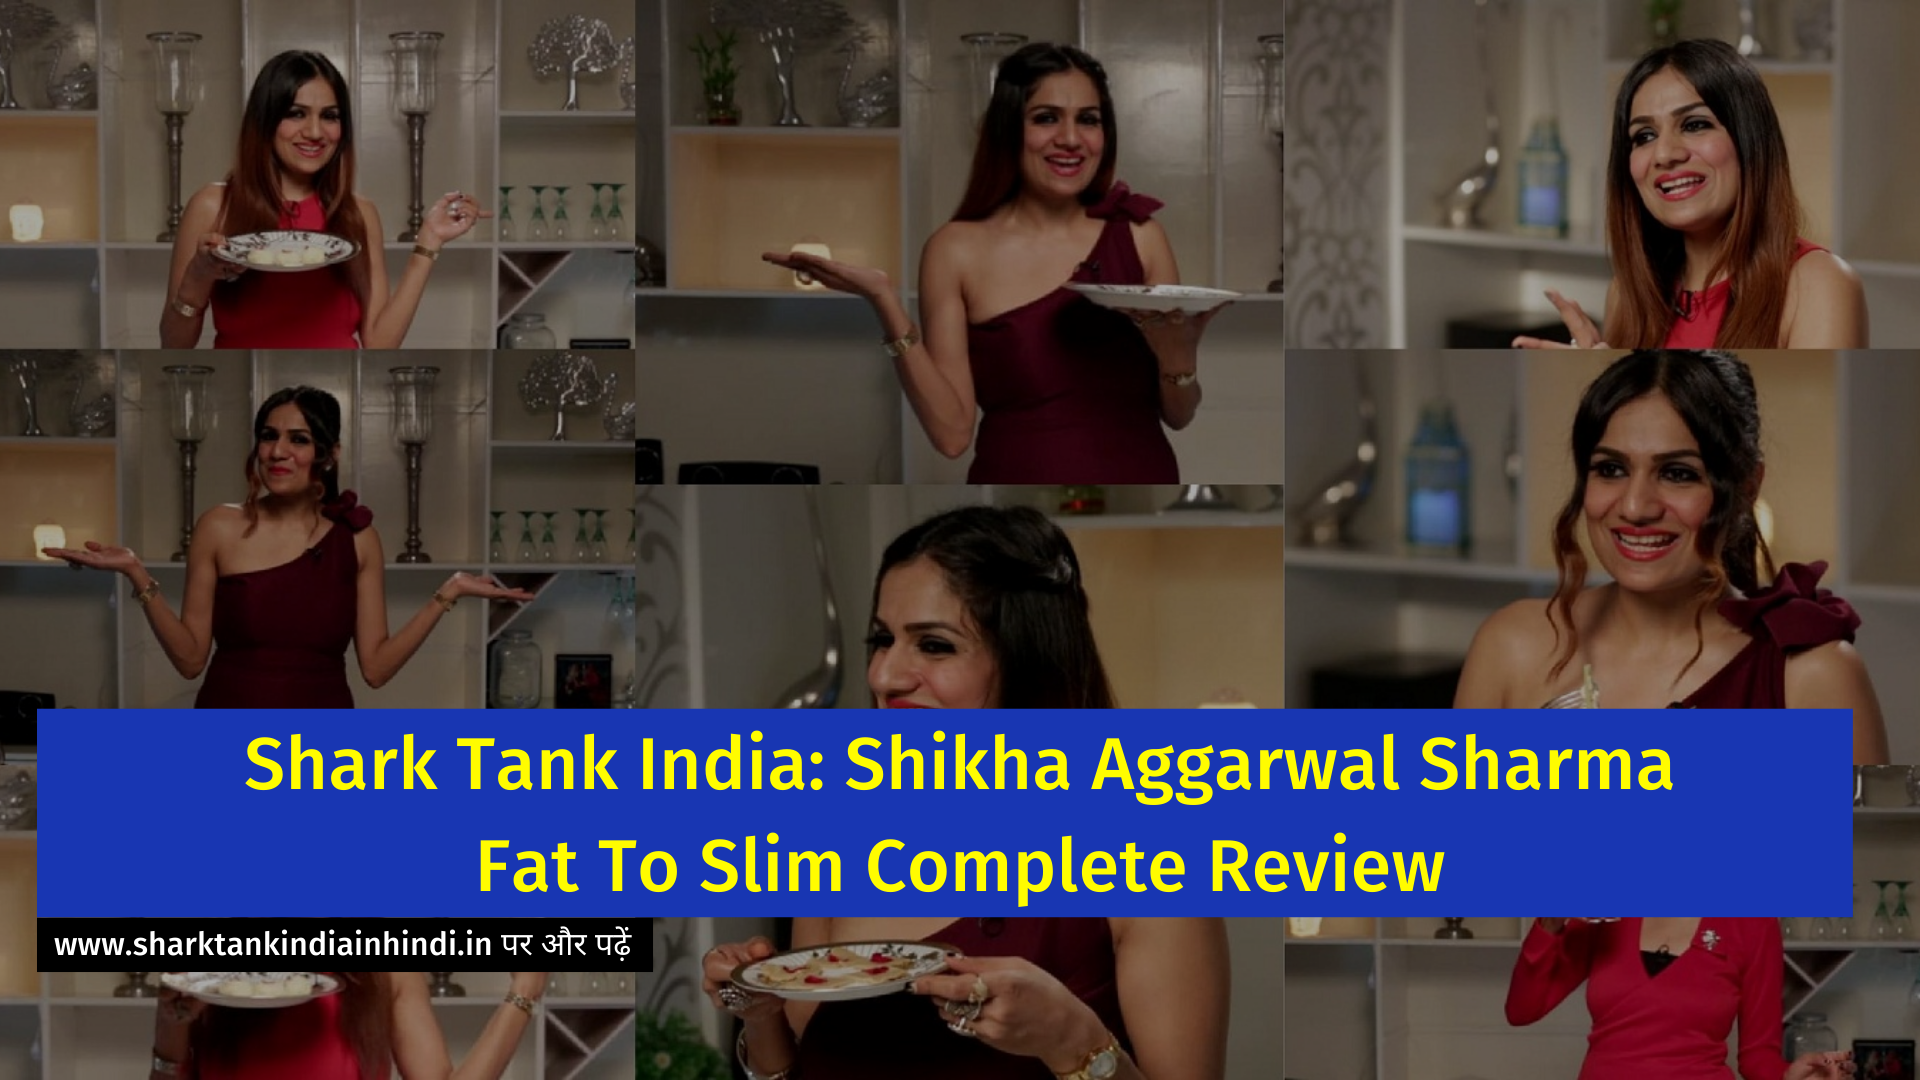 Shark Tank India: Shikha Aggarwal Sharma Fat To Slim Complete Review